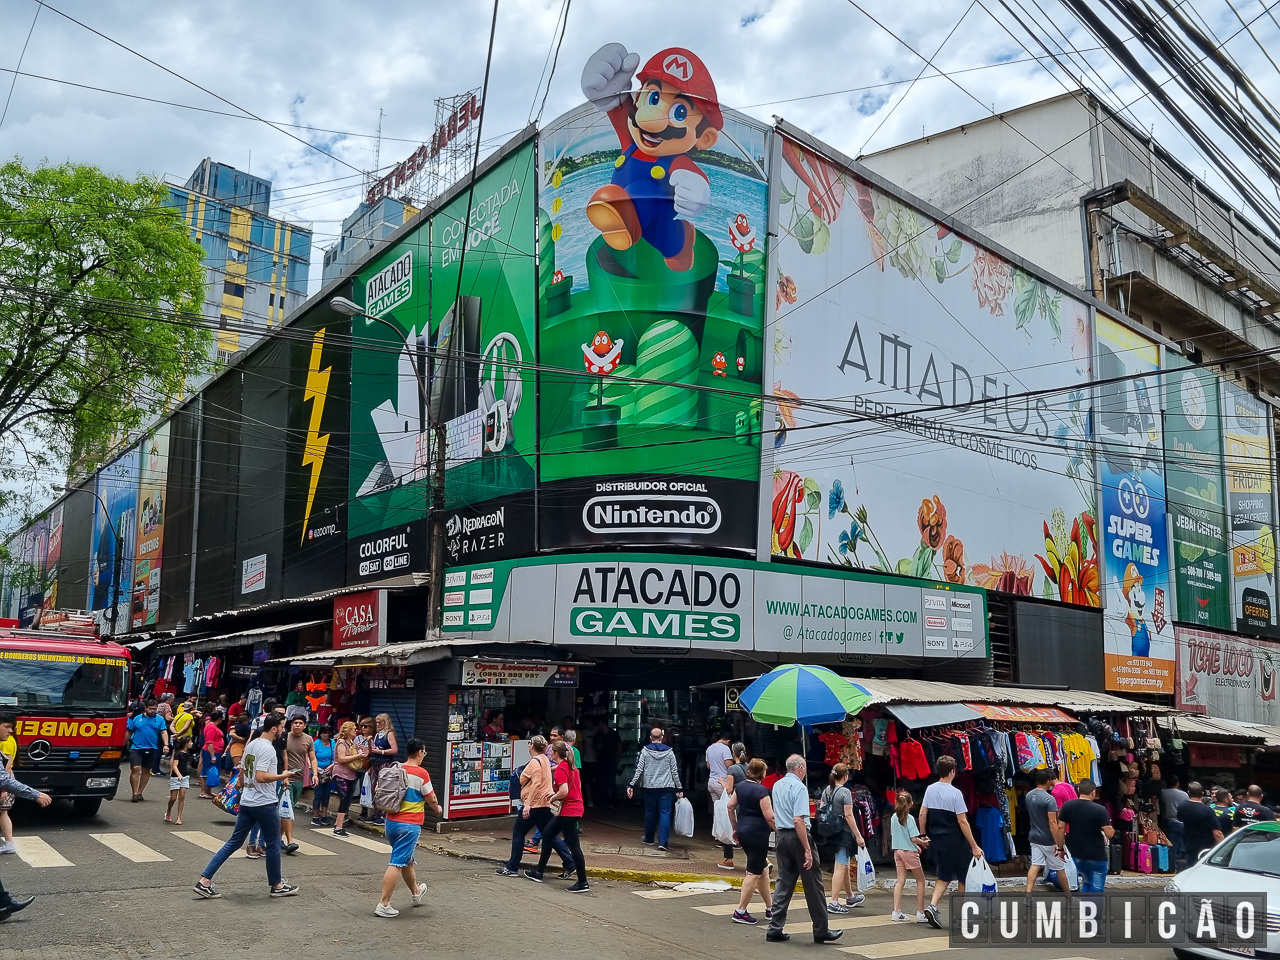 Melhores lojas de eletrônicos no Paraguai